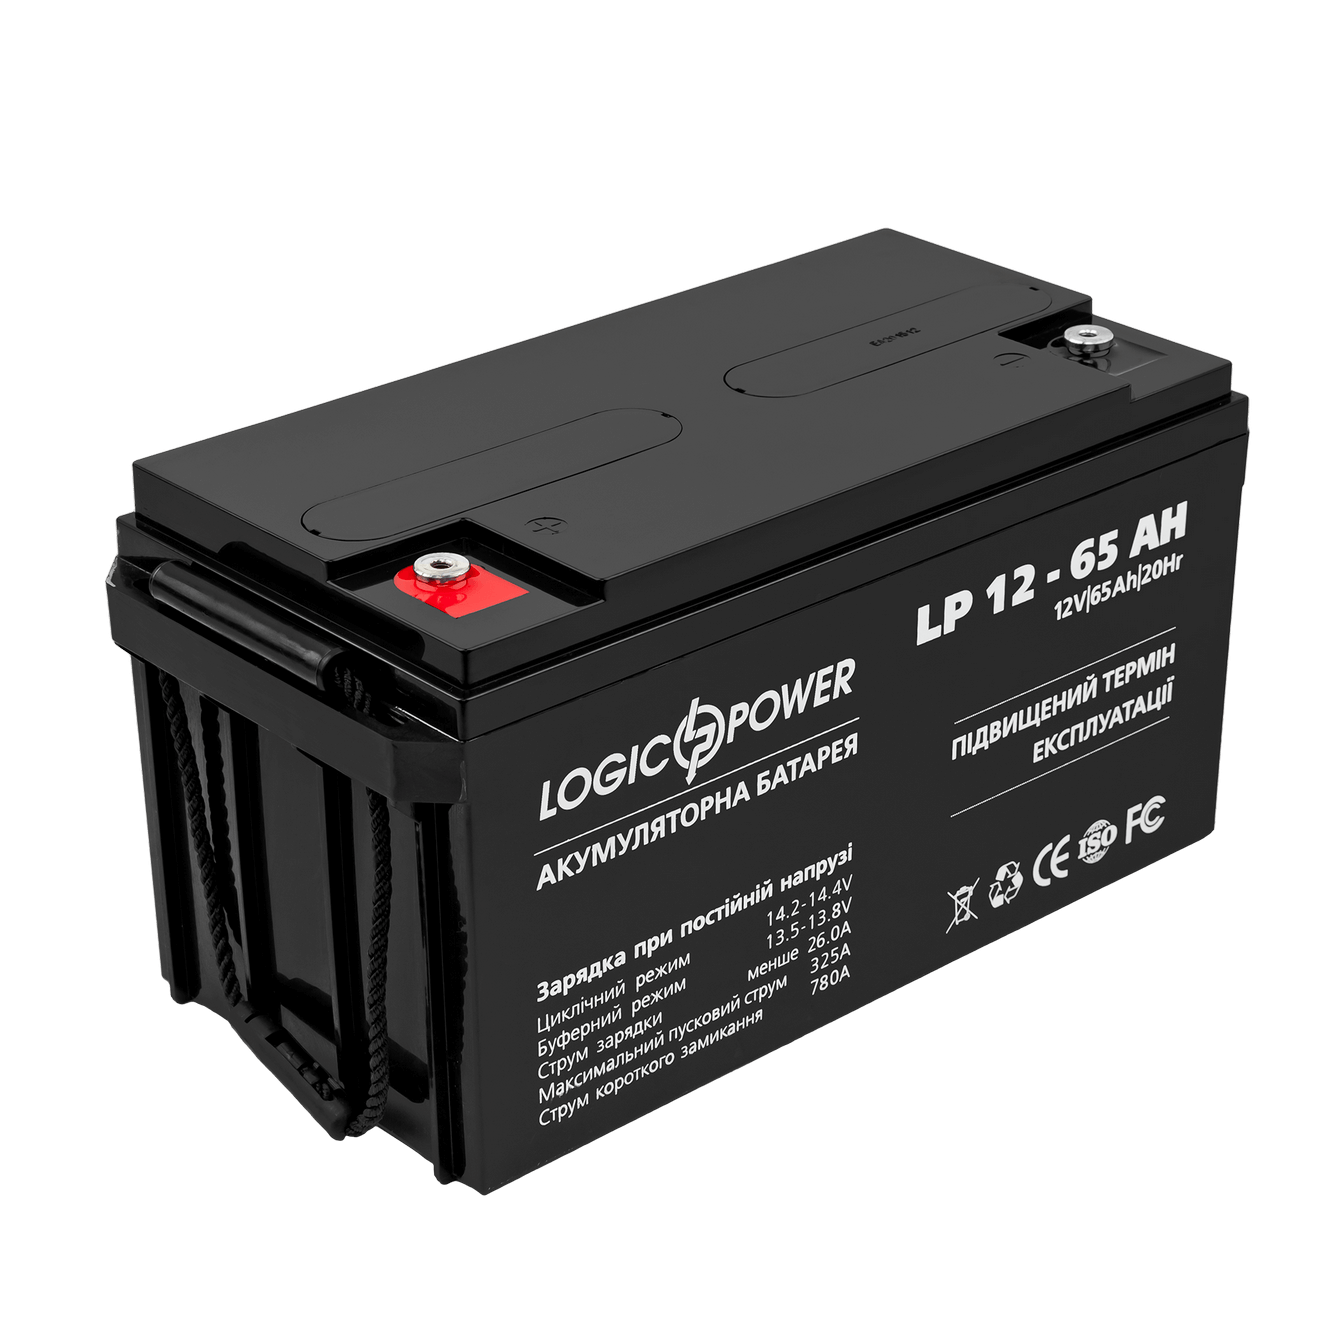 Аккумуляторная батарея LogicPower LP 12 - 65 AH SILVER